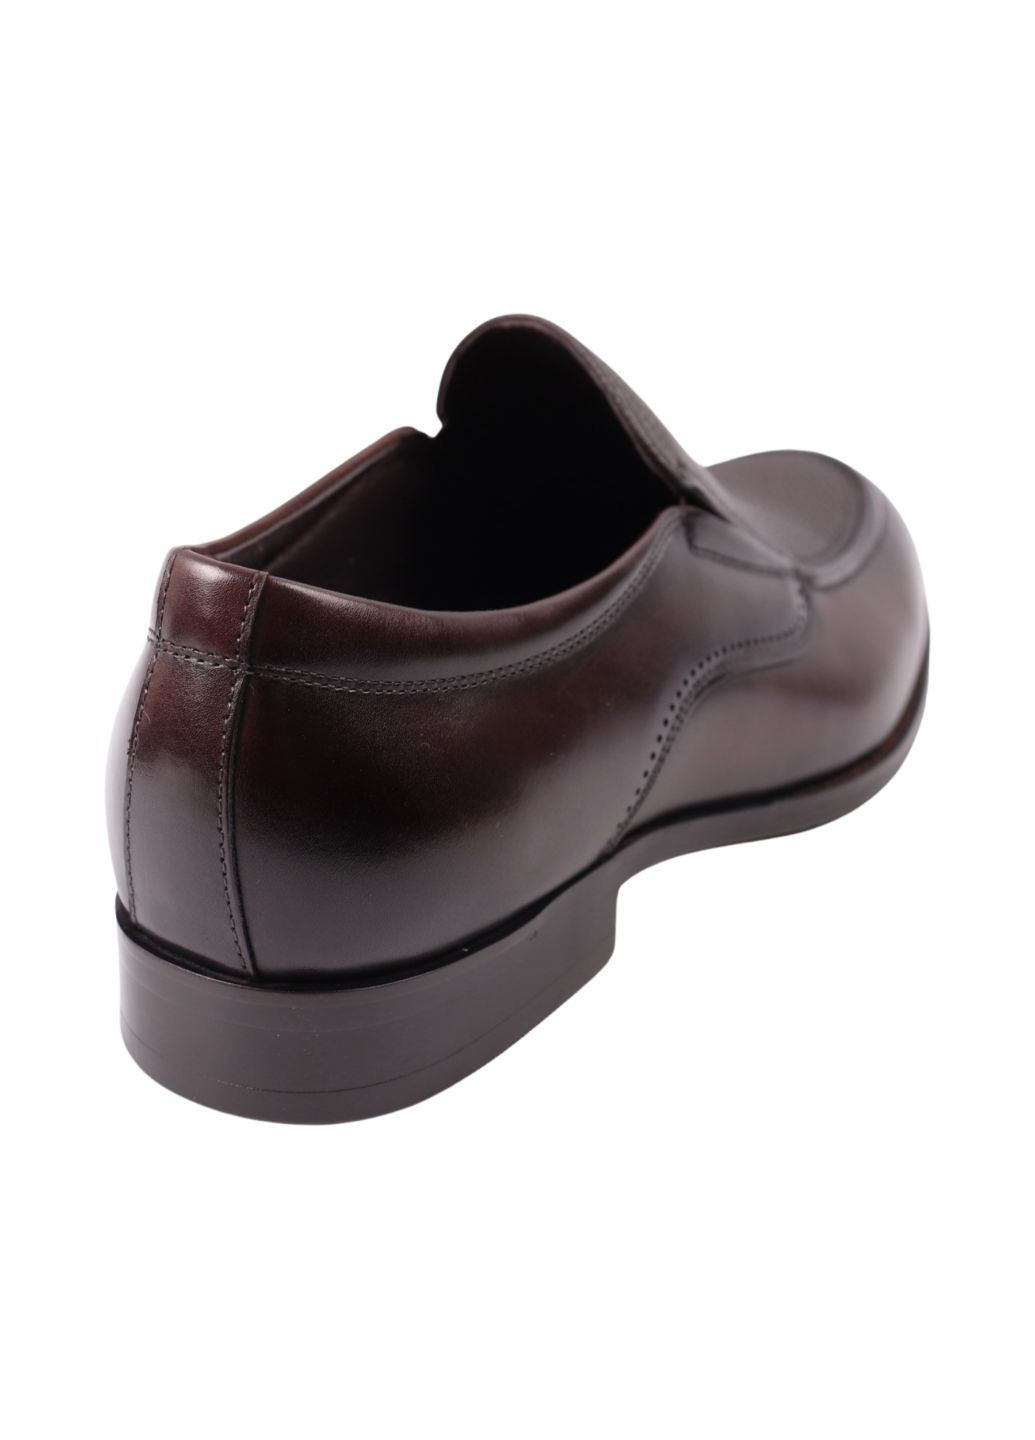 Коричневые туфли мужские lido marinozi кабировые натуральная кожа Lido Marinozzi